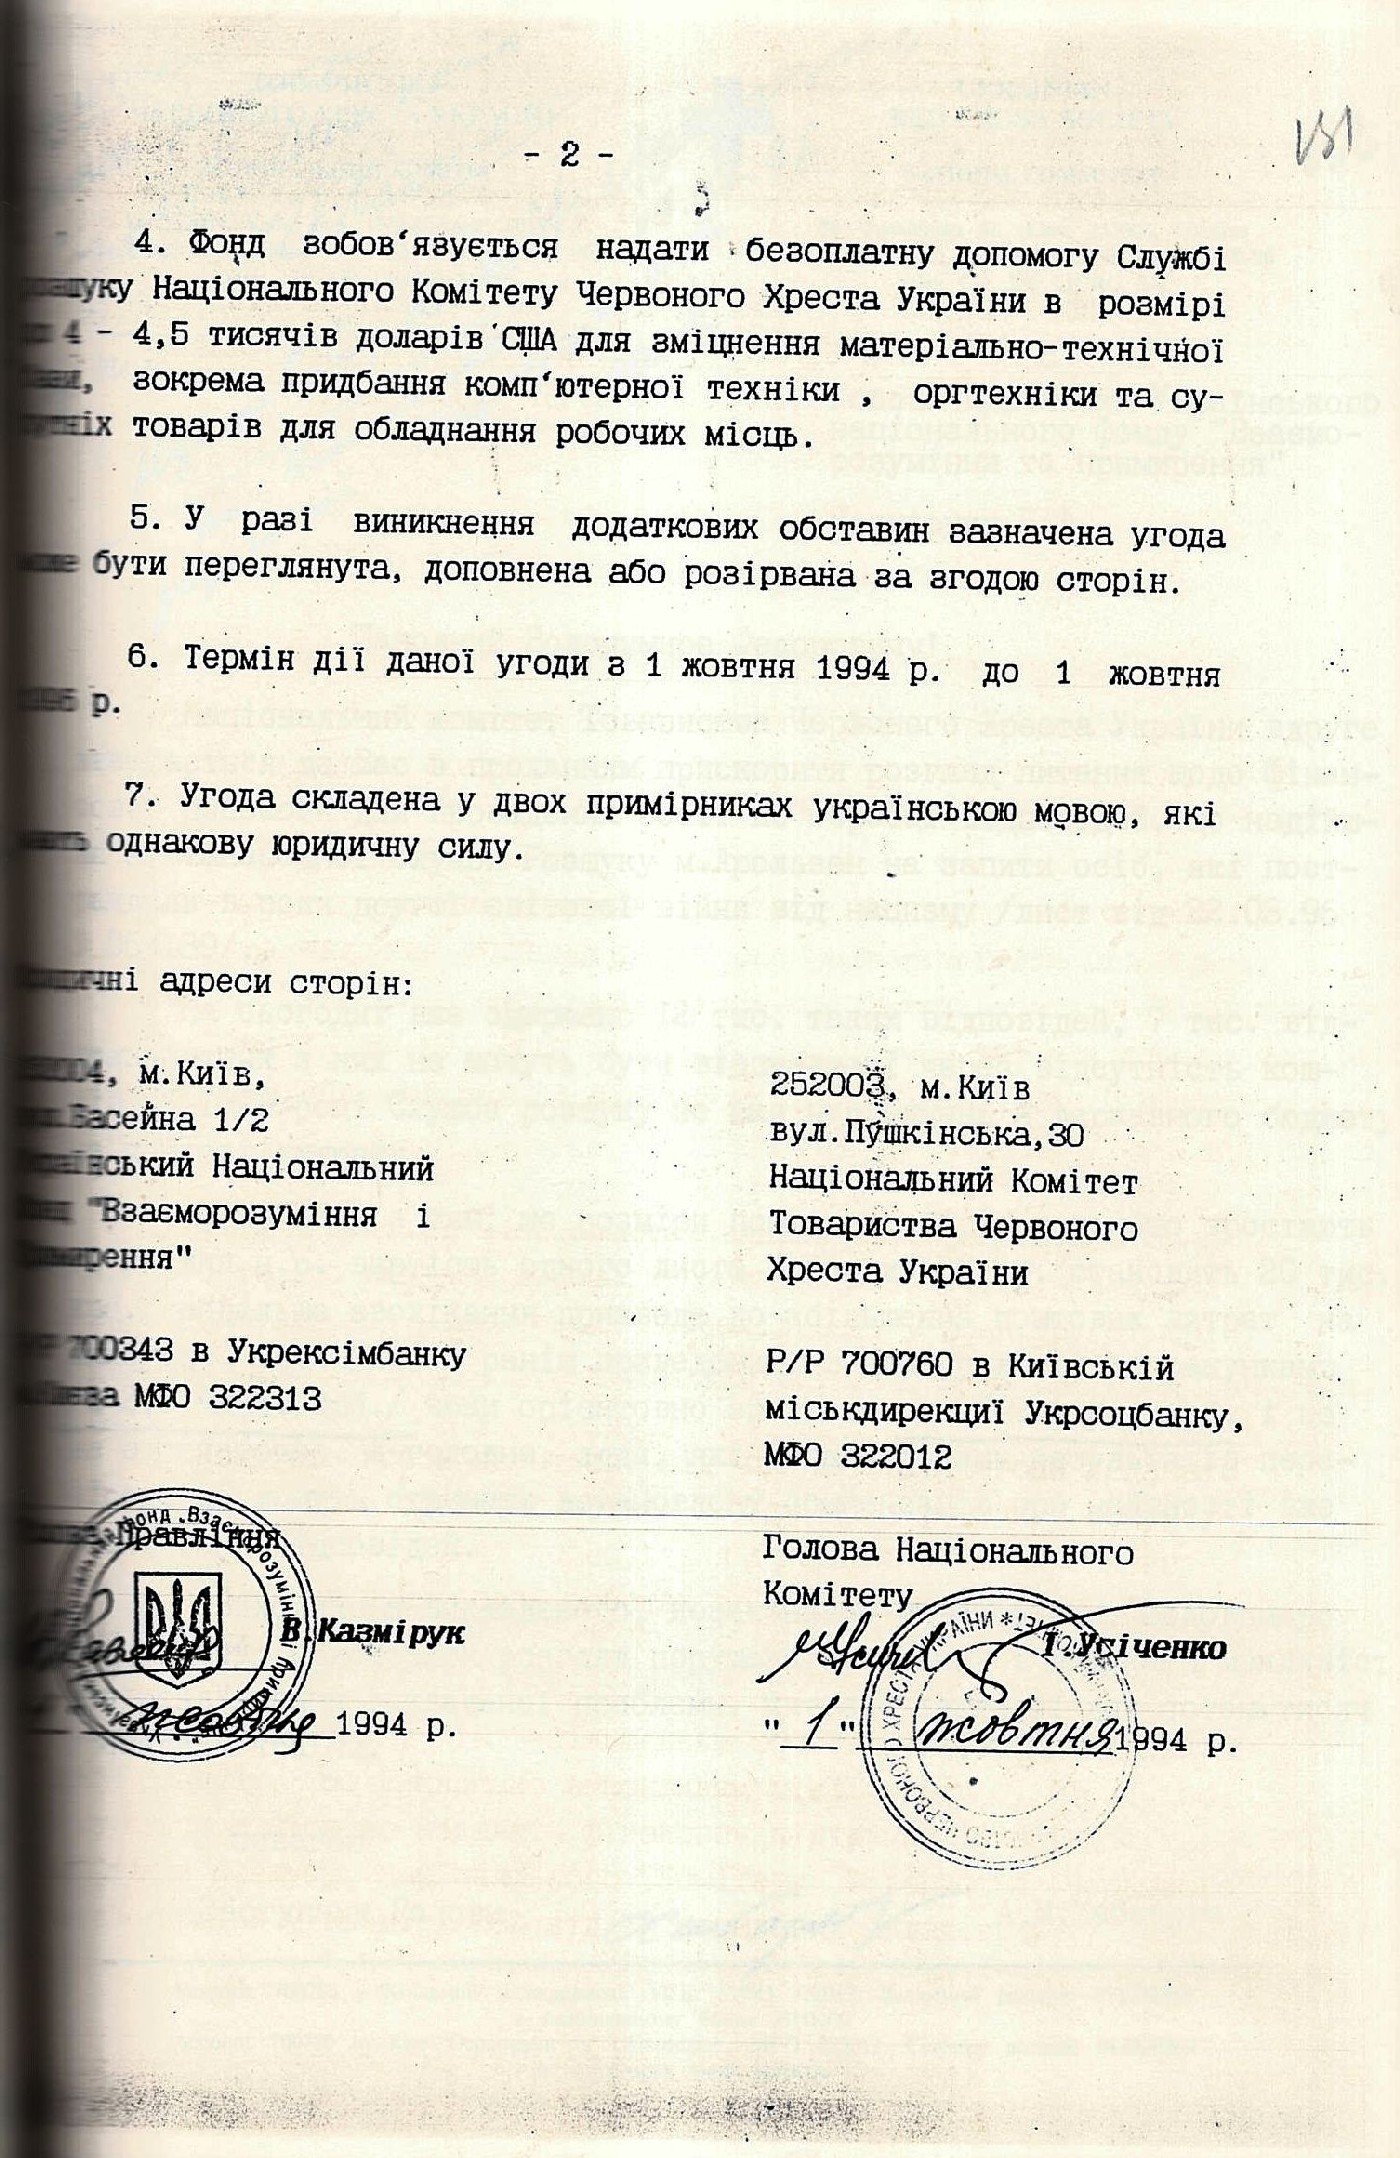 Копія Угоди “Про співробітництво між Українським національним фондом “Взаєморозуміння і примирення” і Національним Комітетом Товариства Червоного Хреста України”. 1 жовтня 1994 р.